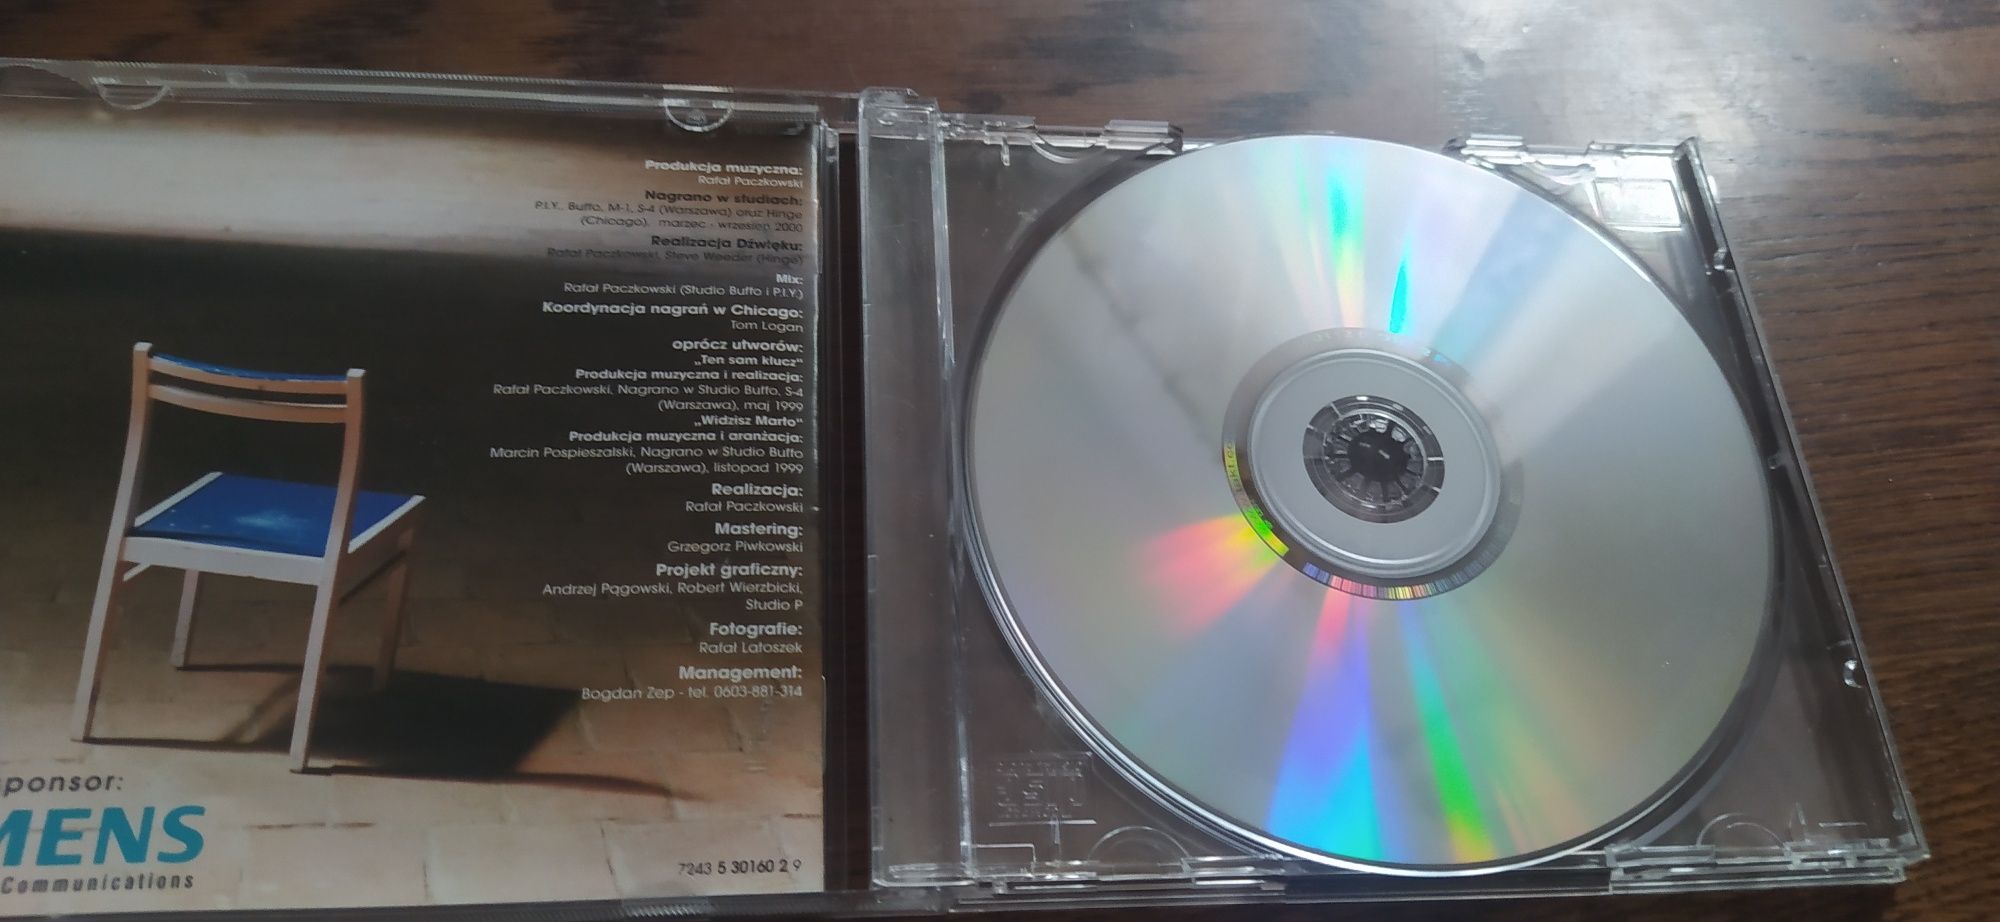 Dary Losu Ryszard Rynkowski CD